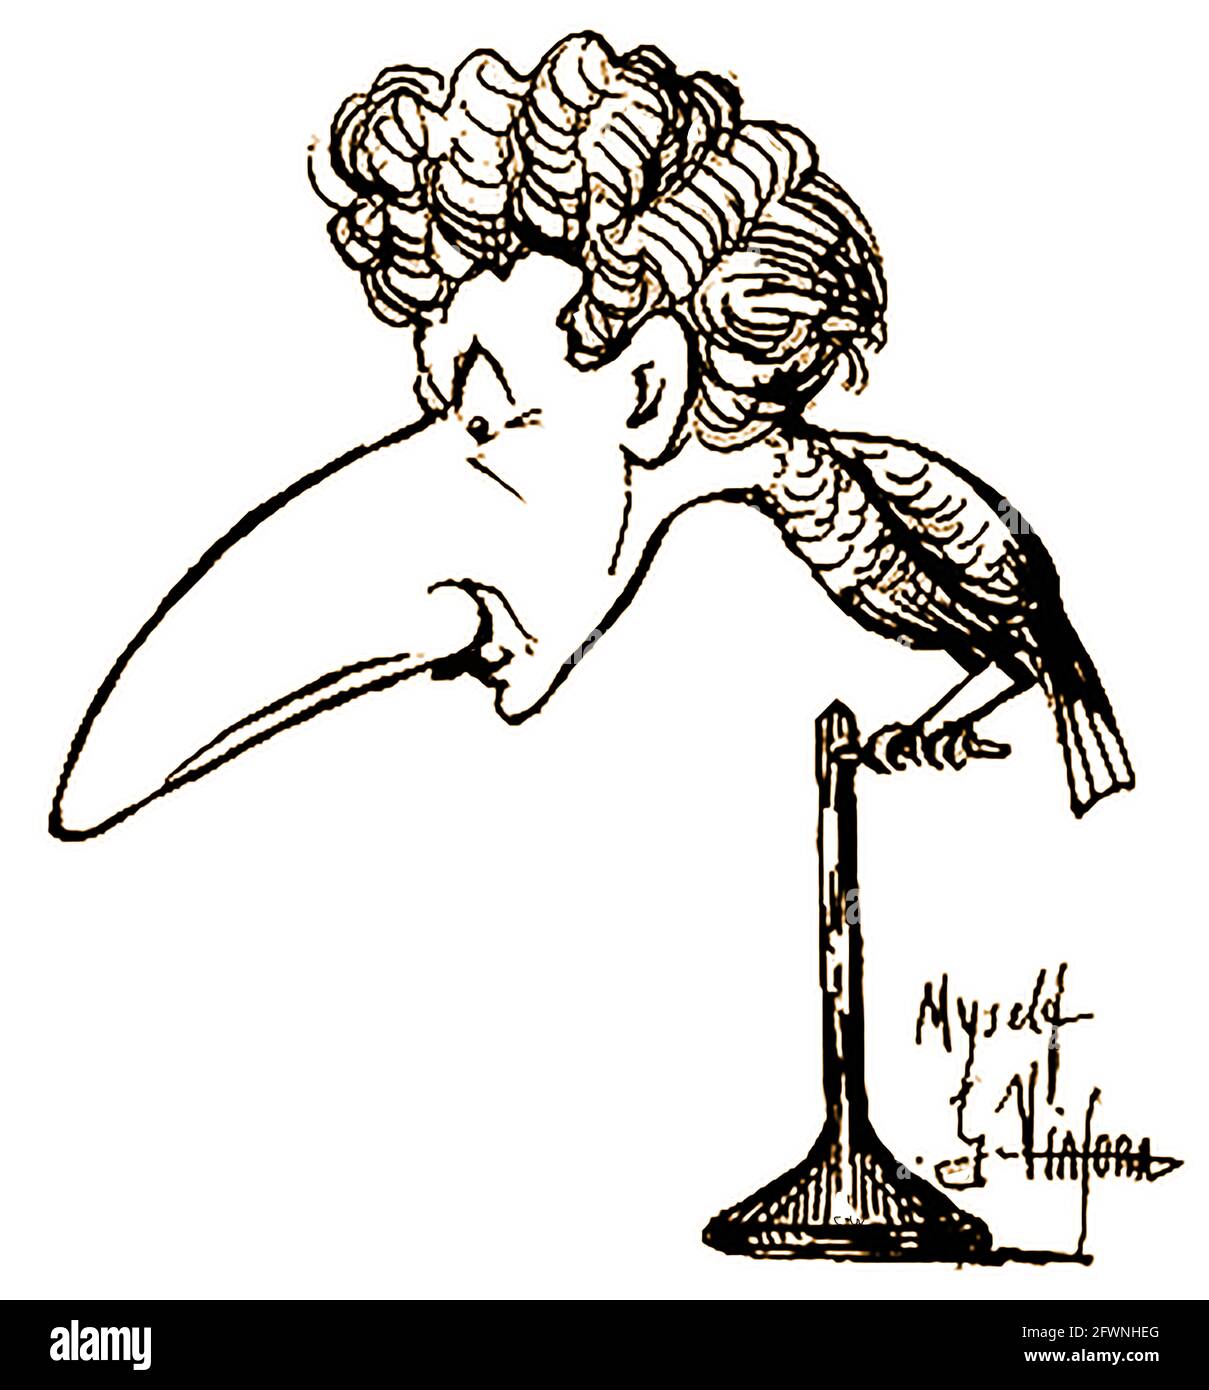 1919 AUTOPORTRAIT de lui-même sous forme de caricature de dessin animé d'un livre de personnes célèbres de l'époque ARTISTE GIOVANNI VIATOR (ETATS-UNIS) - Banque D'Images